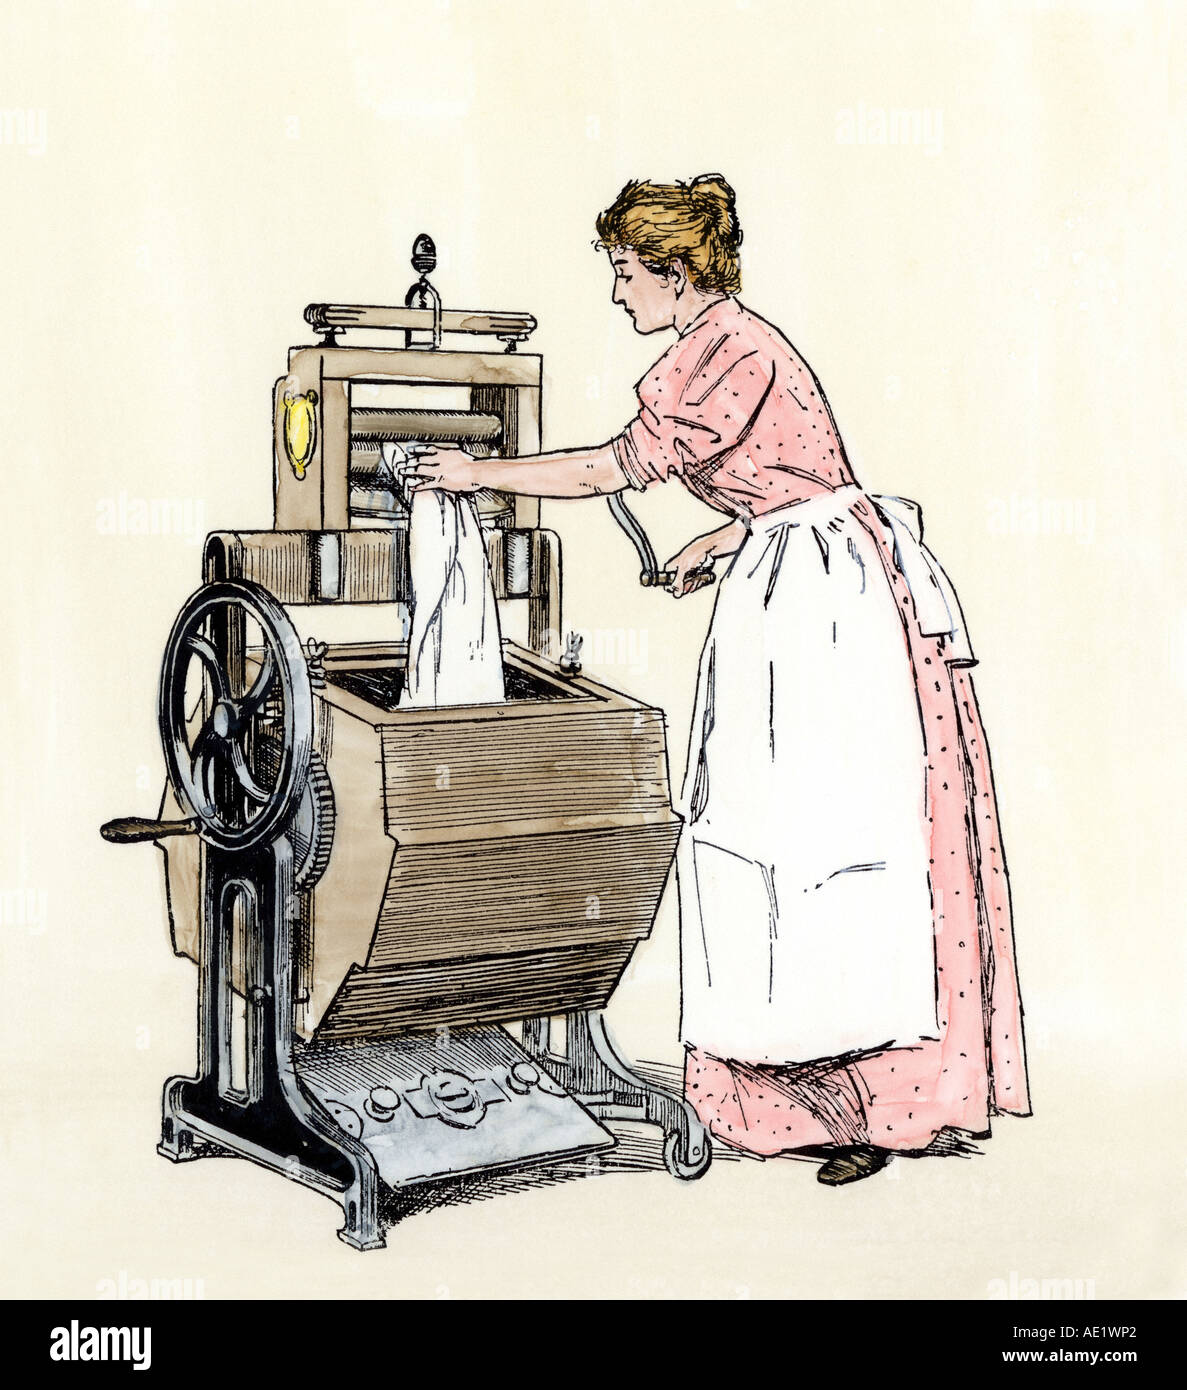 ancienne machine à laver manuelle Photos